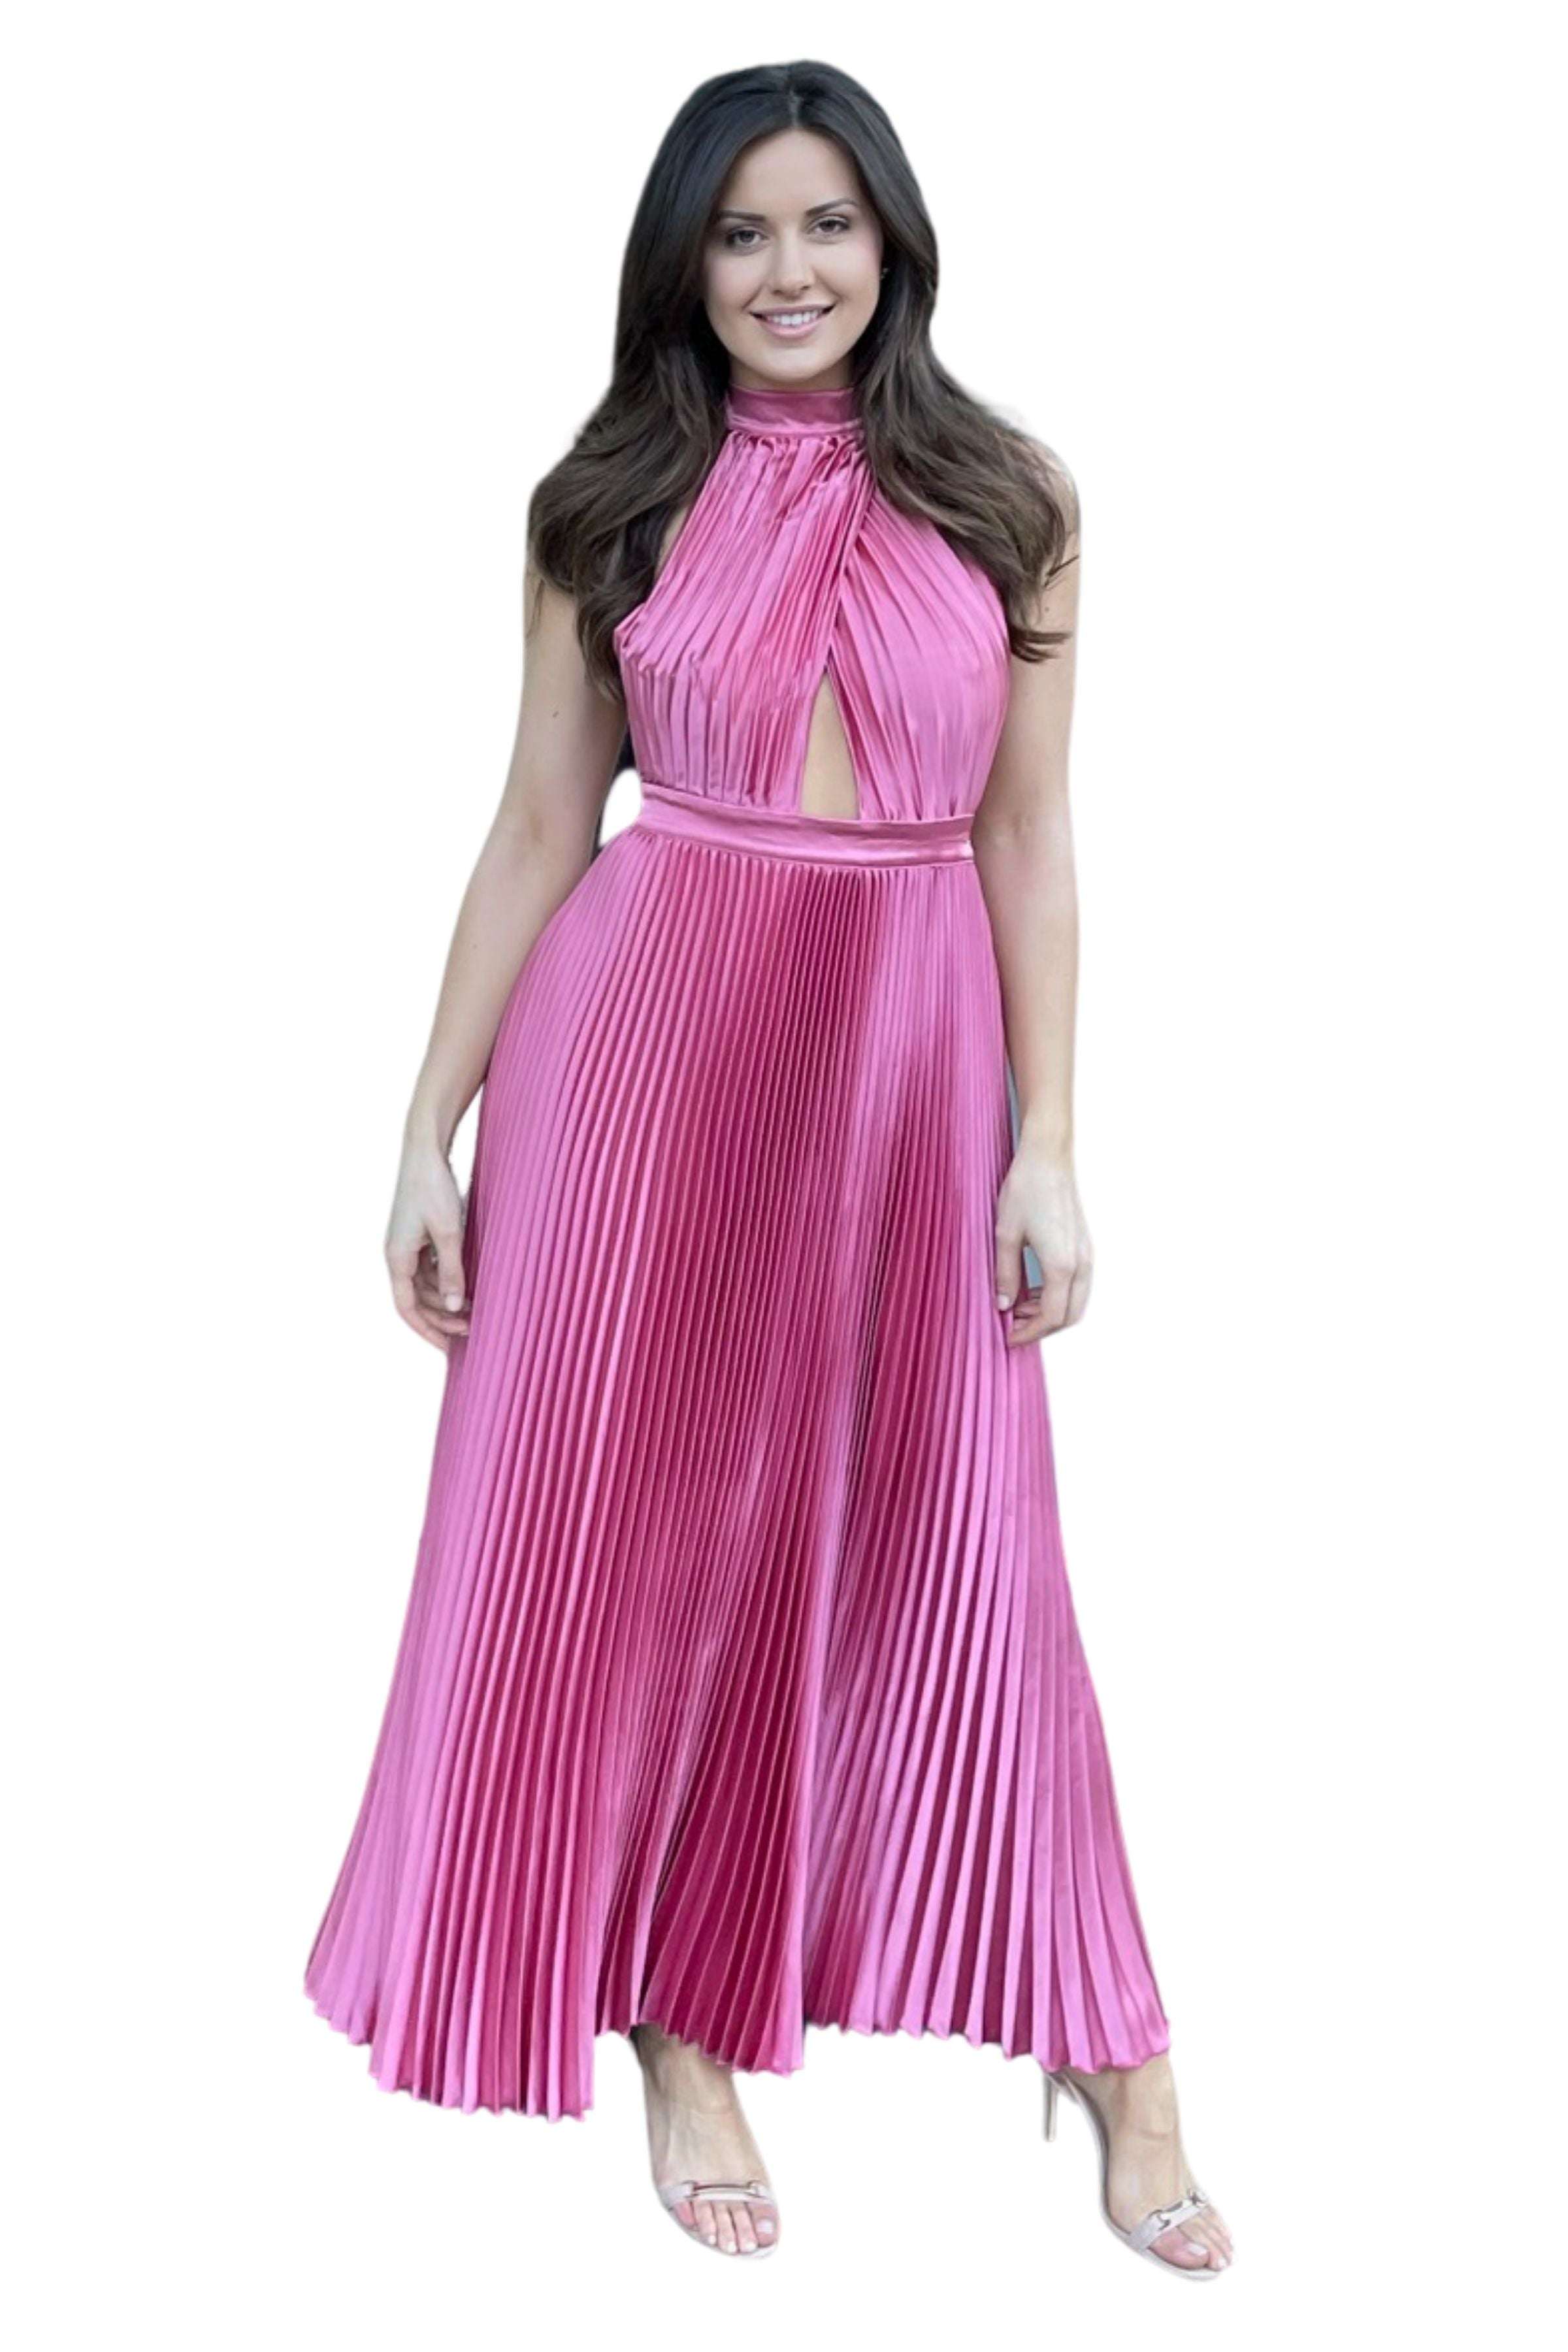 L'Idee L'IDEE Renaissance Gown (Dusty Rose) - RRP $349 - lidee-renaissance-gown-dusty-rose---rrp-9-dress-for-a-night-30754786.jpg